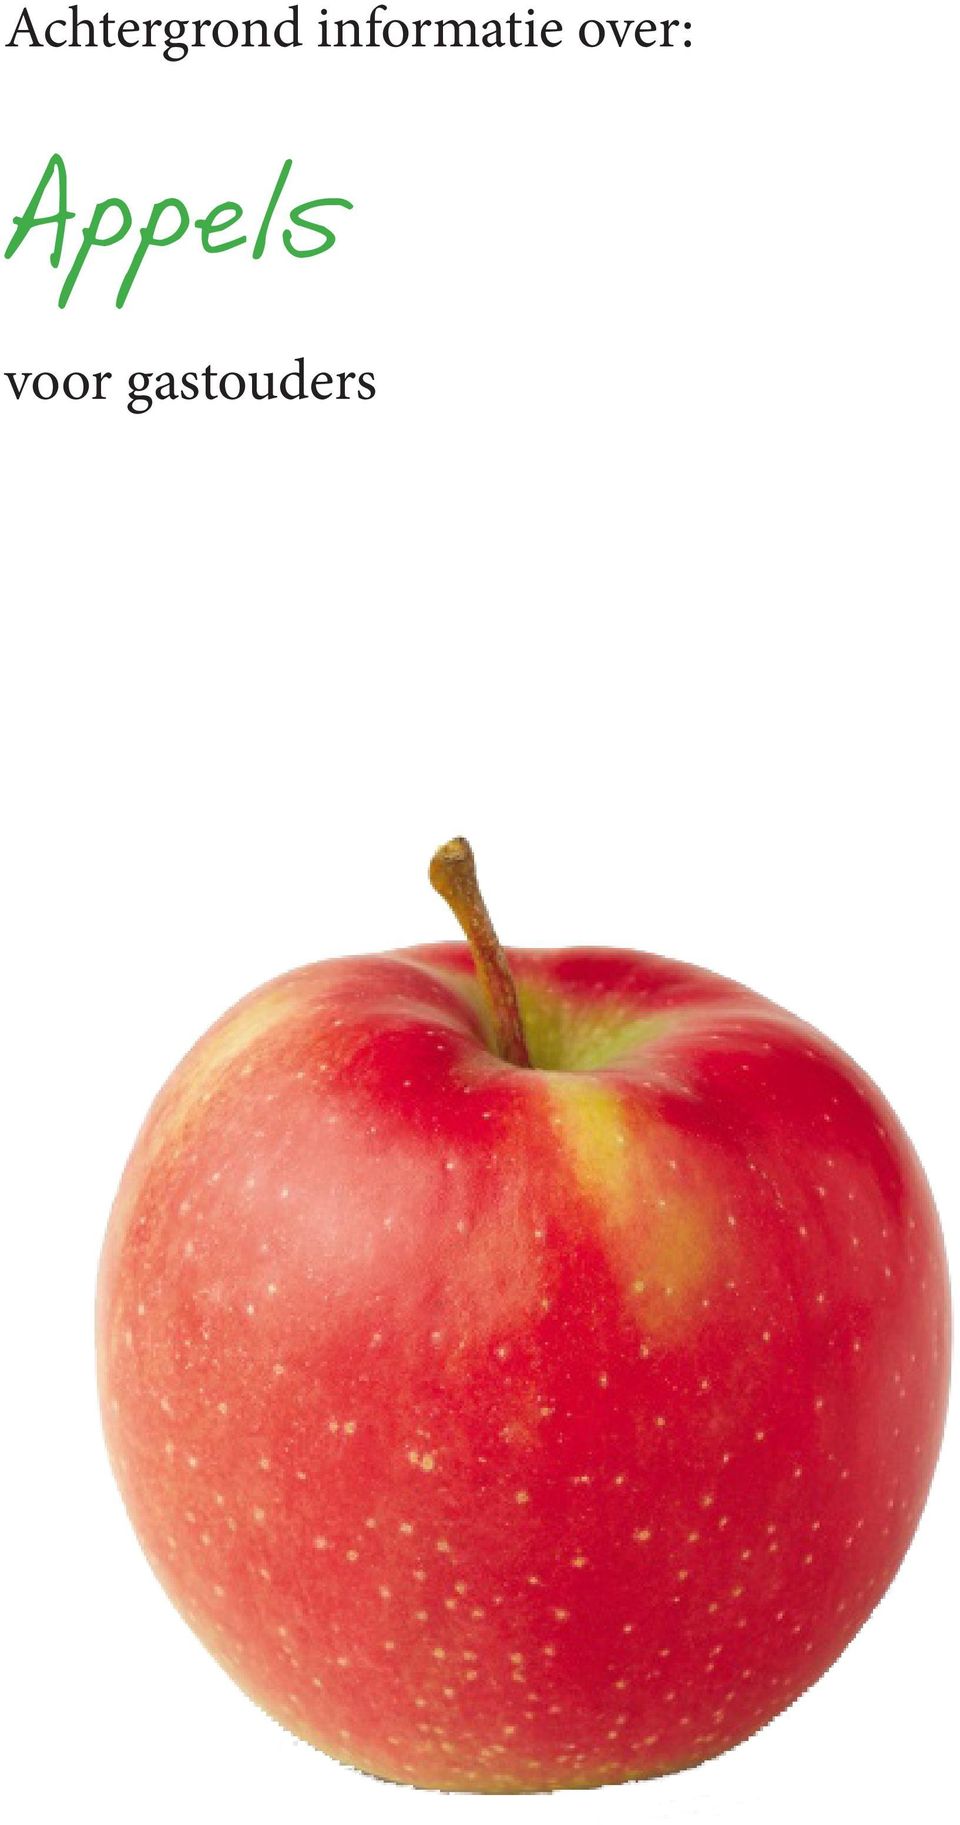 over: Appels